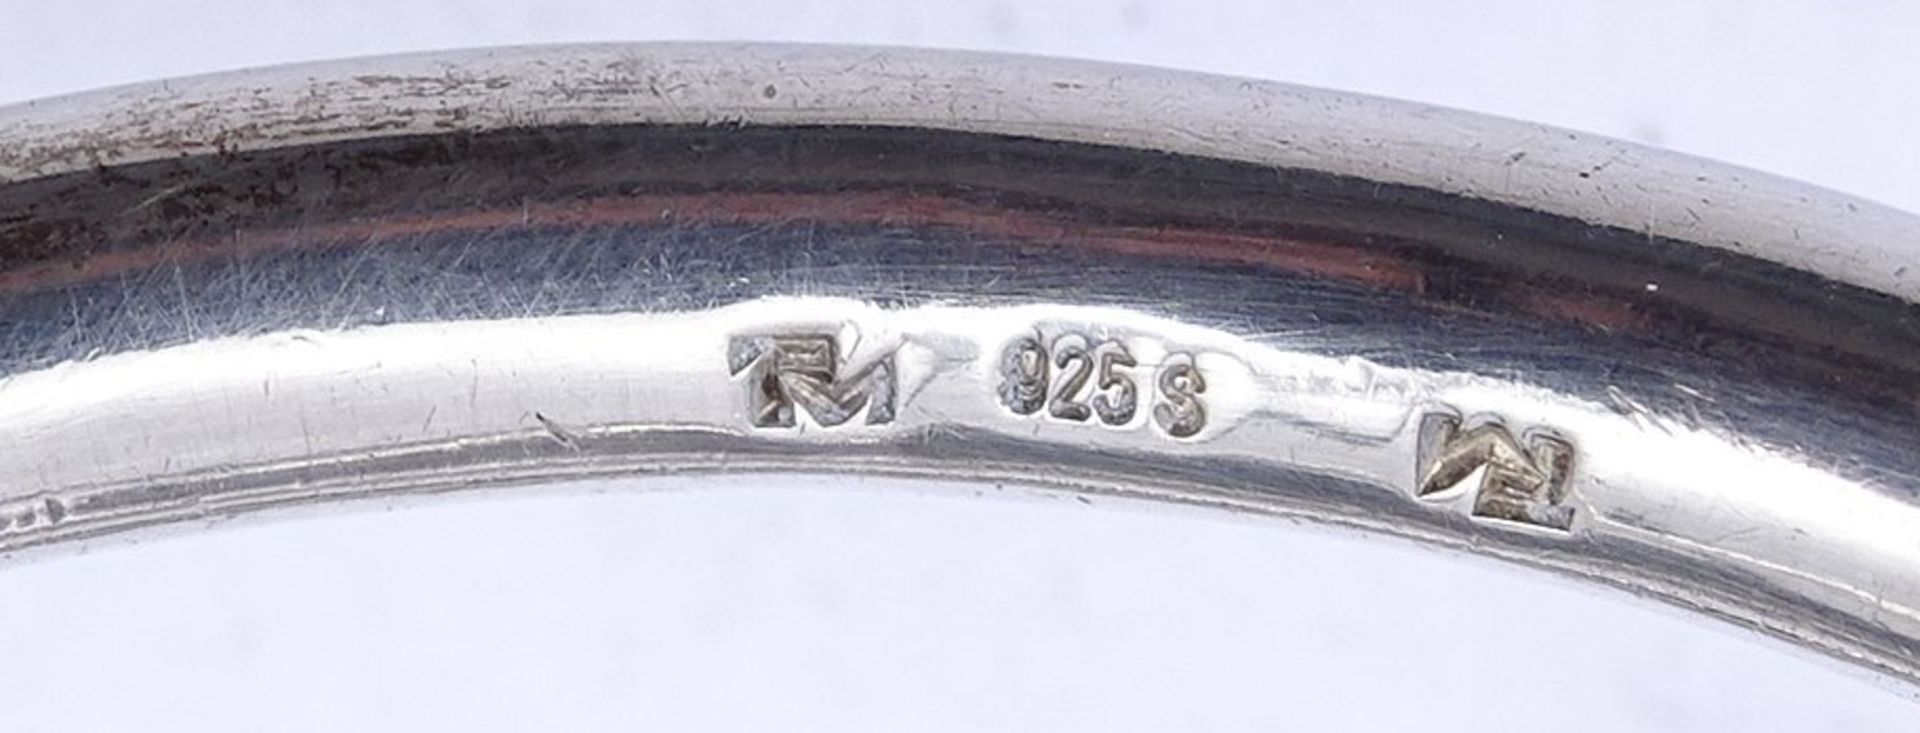 Massive Sterling Silber Armbanduhr , Markenlos, mechanisch, Werk läuft, D. 27,8mm, 106g. - Bild 5 aus 5